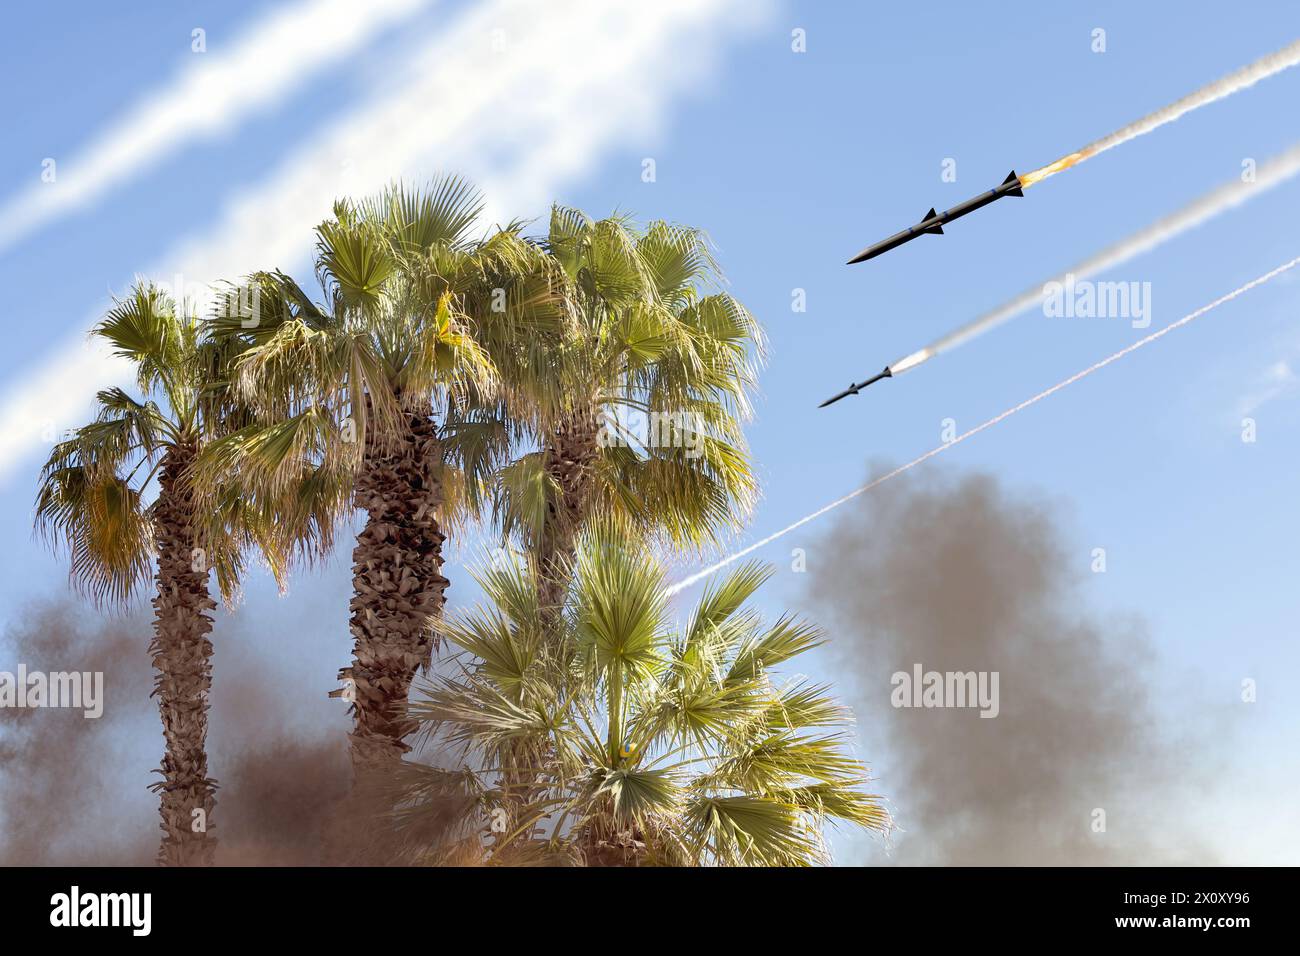 Ballistische Raketen am Himmel vor Palmenhintergrund, Spuren des Raketenstarts. Konzept: Krieg zwischen Iran und Israel, Raketenangriff. Stockfoto